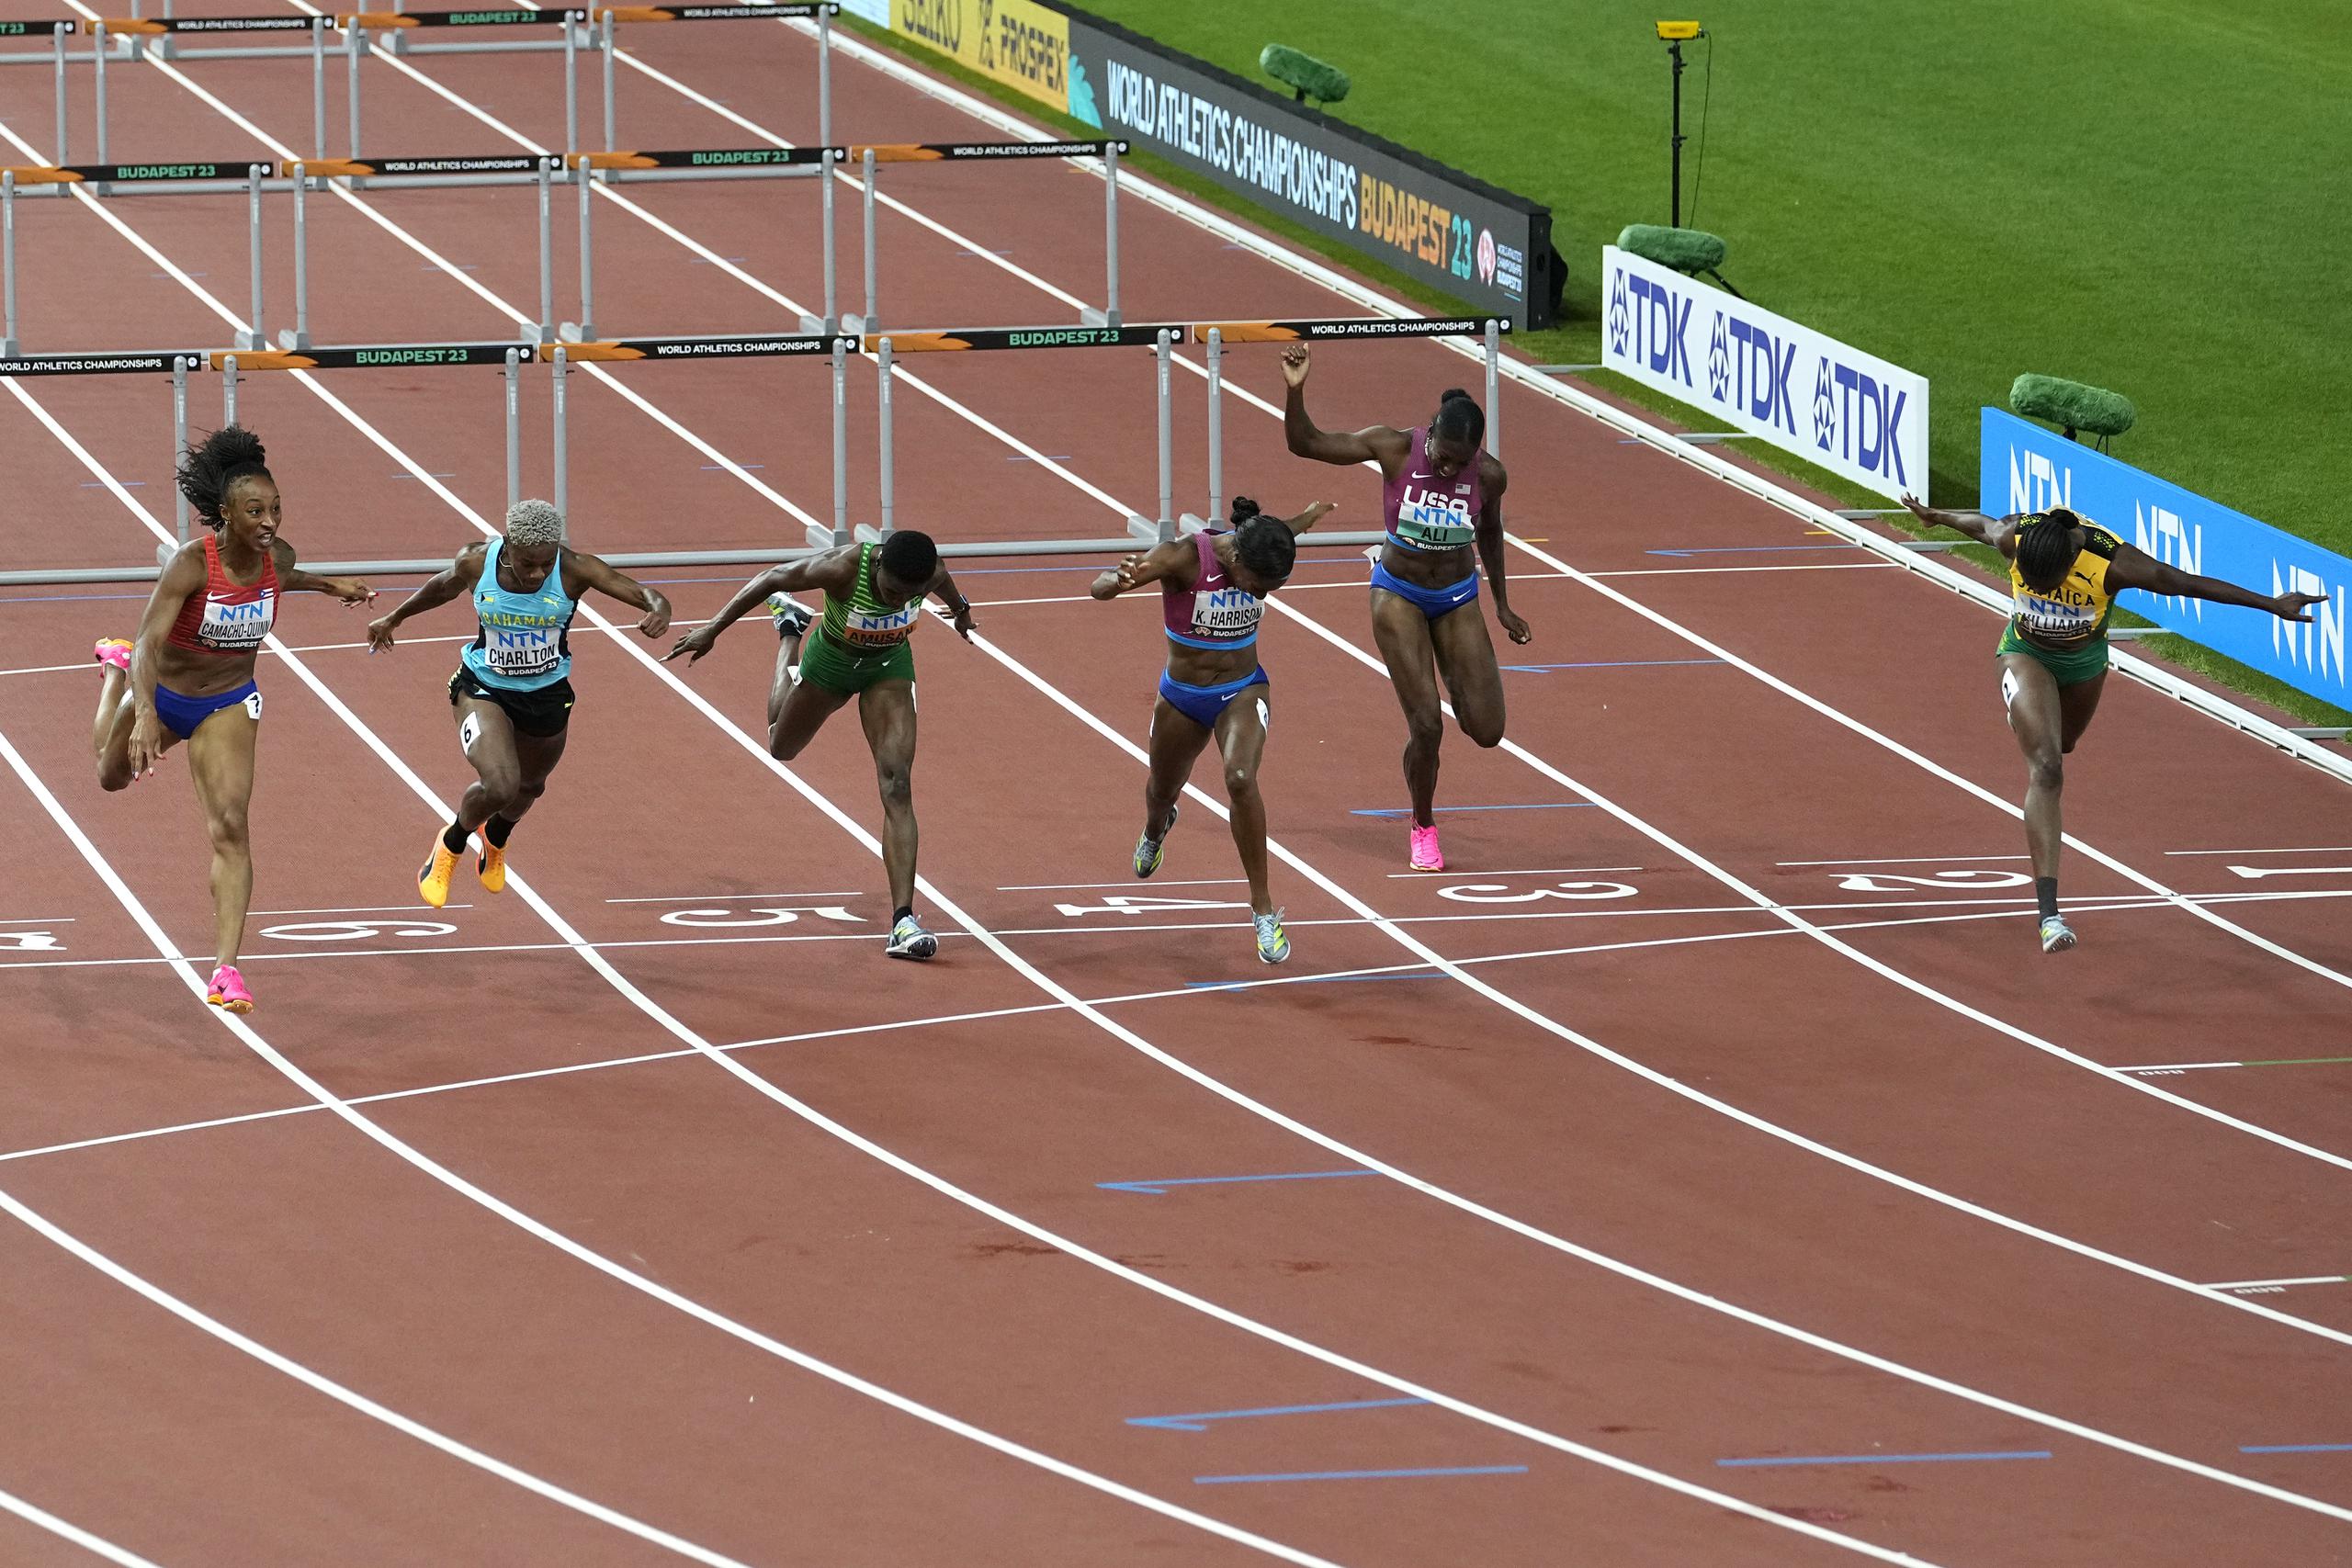 Danielle Williams, de Jamaica, por el carril número 1, completa su corrida mientras el resto de las corredoras, incluida Jasmine Camacho Quinn, a la izquierda, hacían su esfuerzo final por ganar la prueba. Williams se llevó el oro con 12.43 segundos y Camacho Quinn la plata con 12.44.